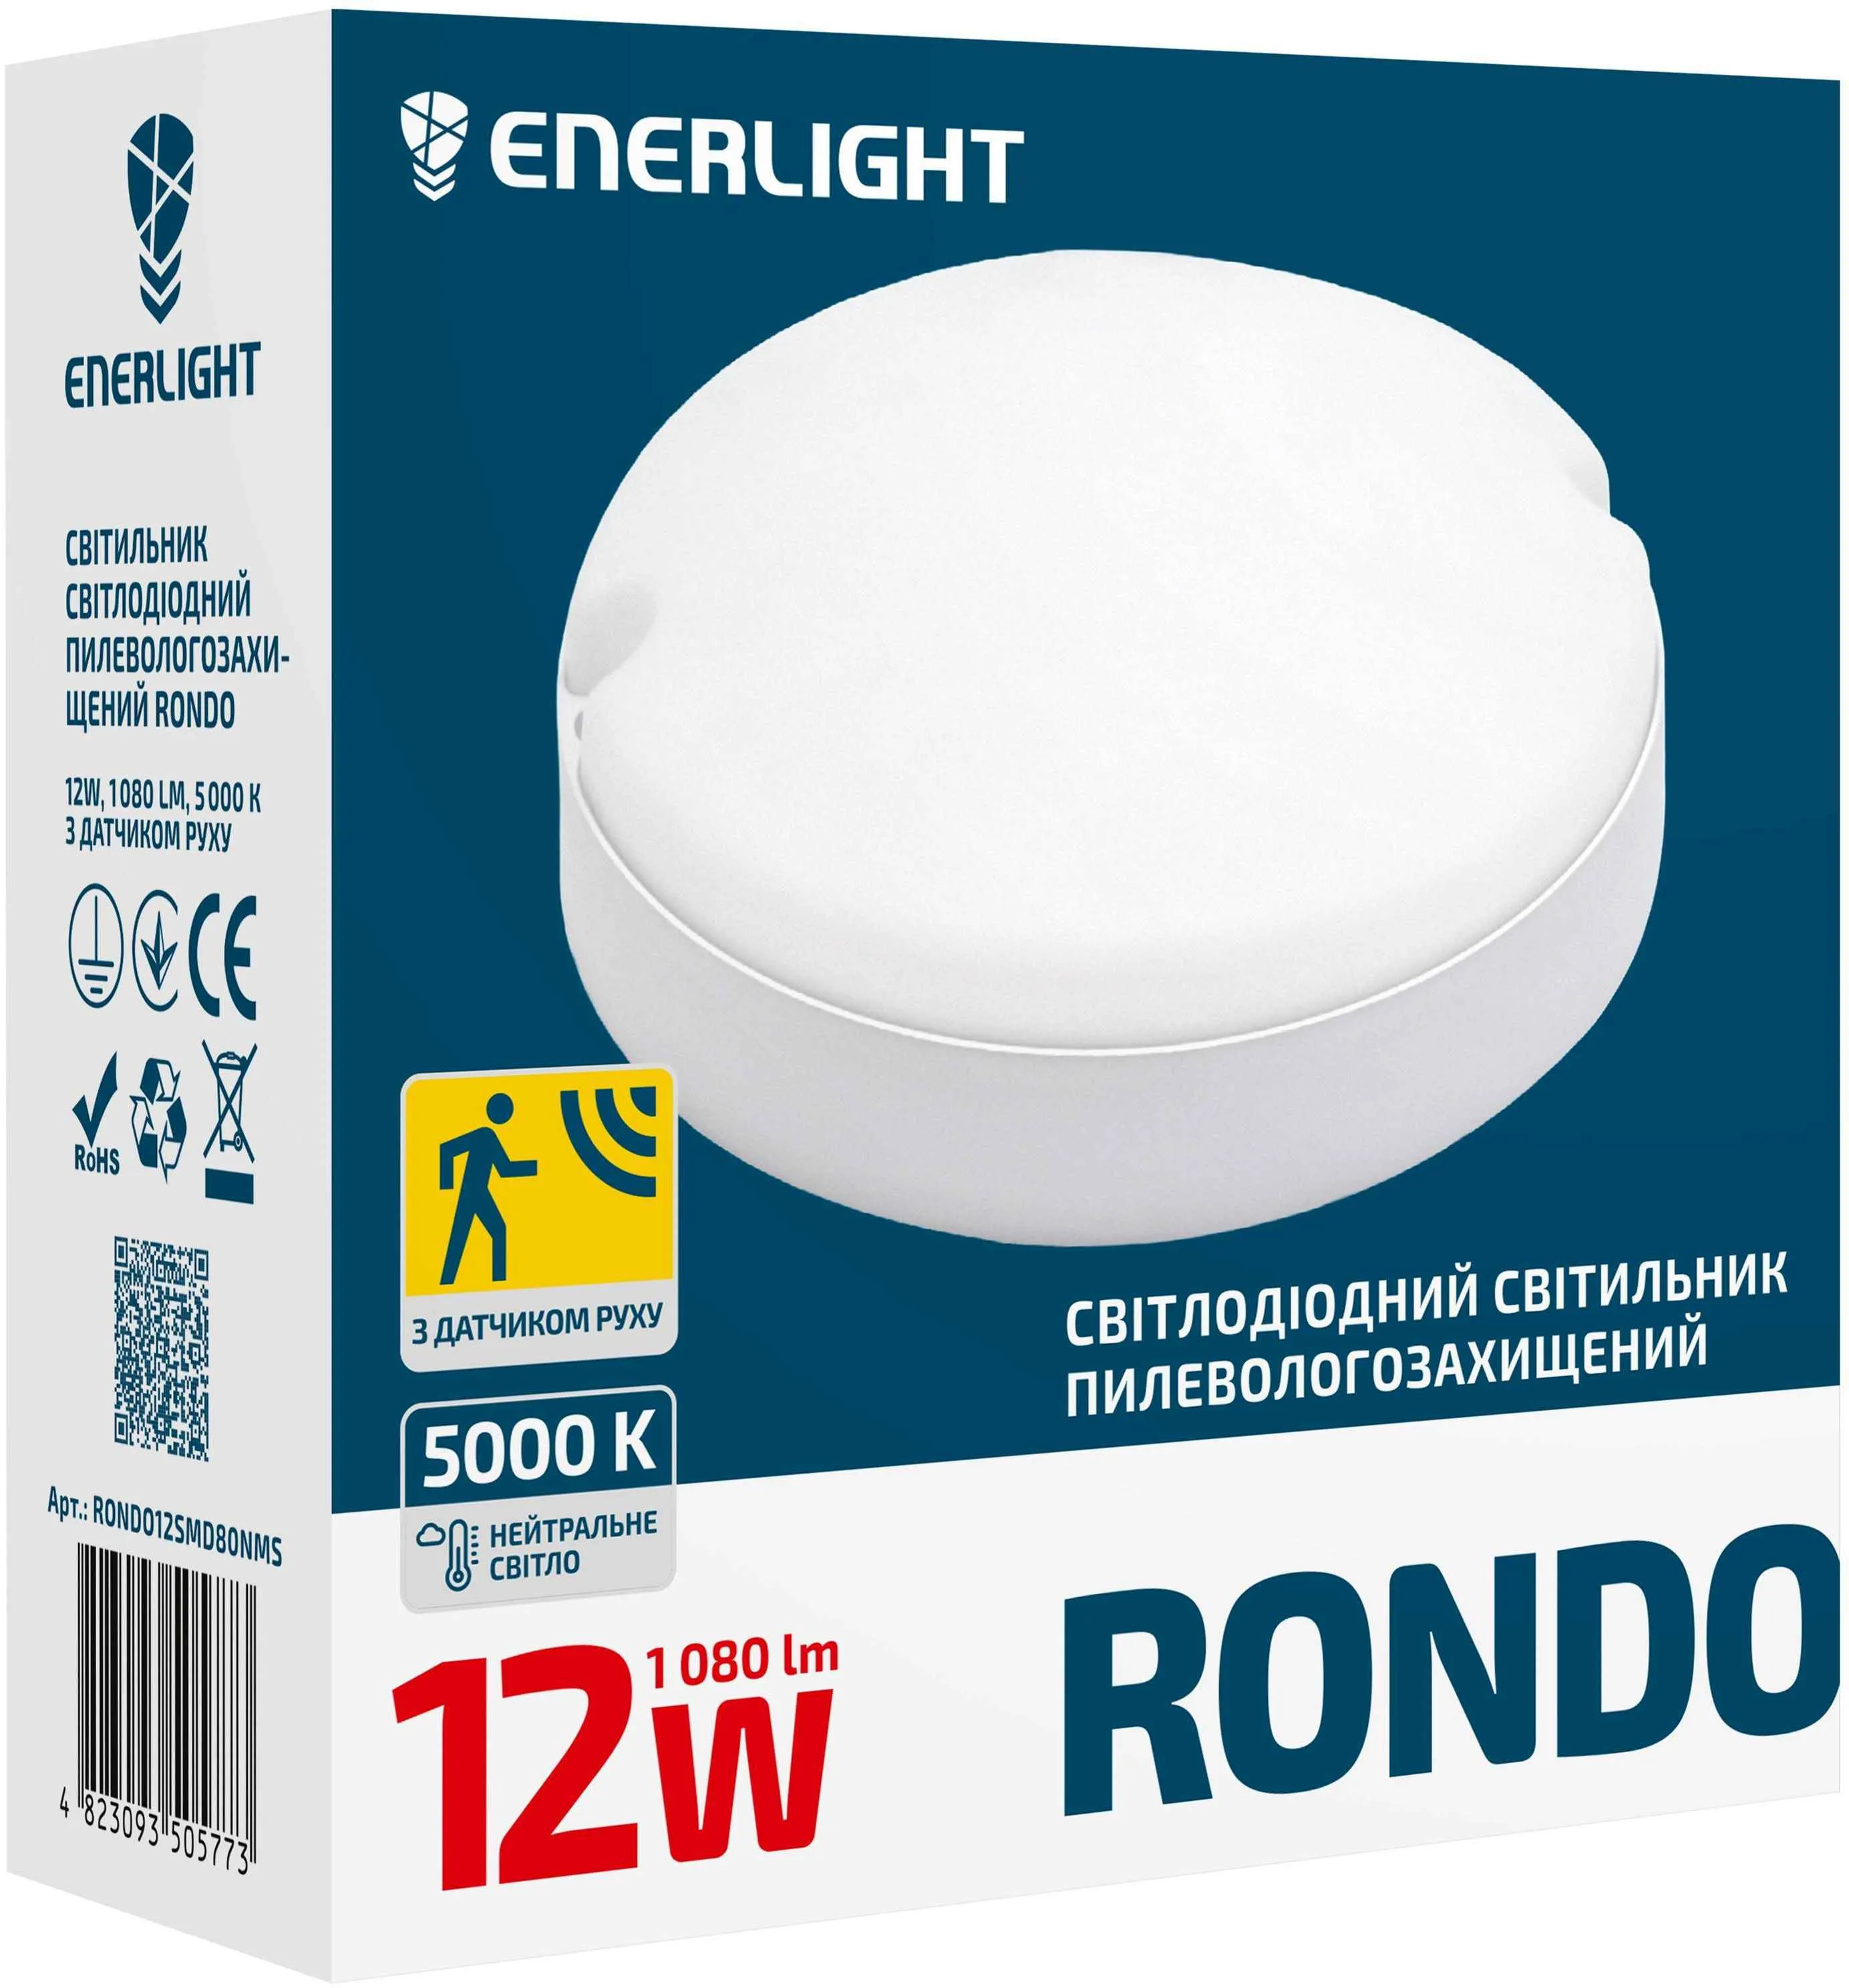 Світильник світлодіодний Enerlight, 12 Вт, 5000 К, датчик руху Rondo, RONDO12SMD80NMS купити недорого в Україні, фото 2